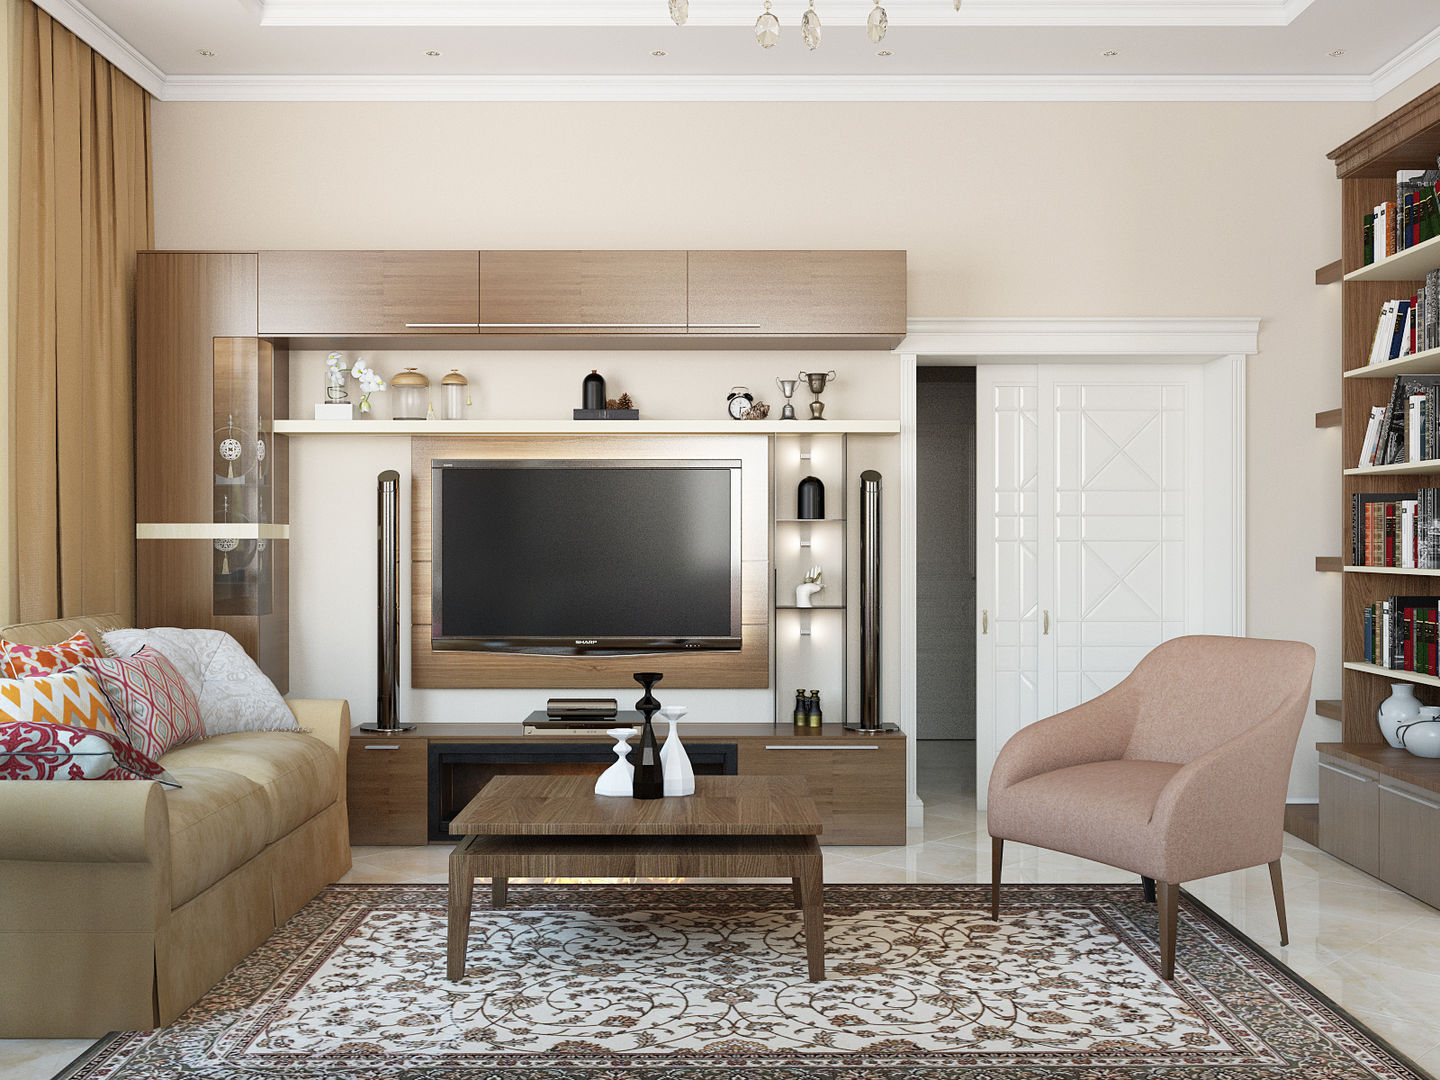 Классический интерьер с элементами ориентал и красивыми десткими, Tatiana Zaitseva Design Studio Tatiana Zaitseva Design Studio Modern living room